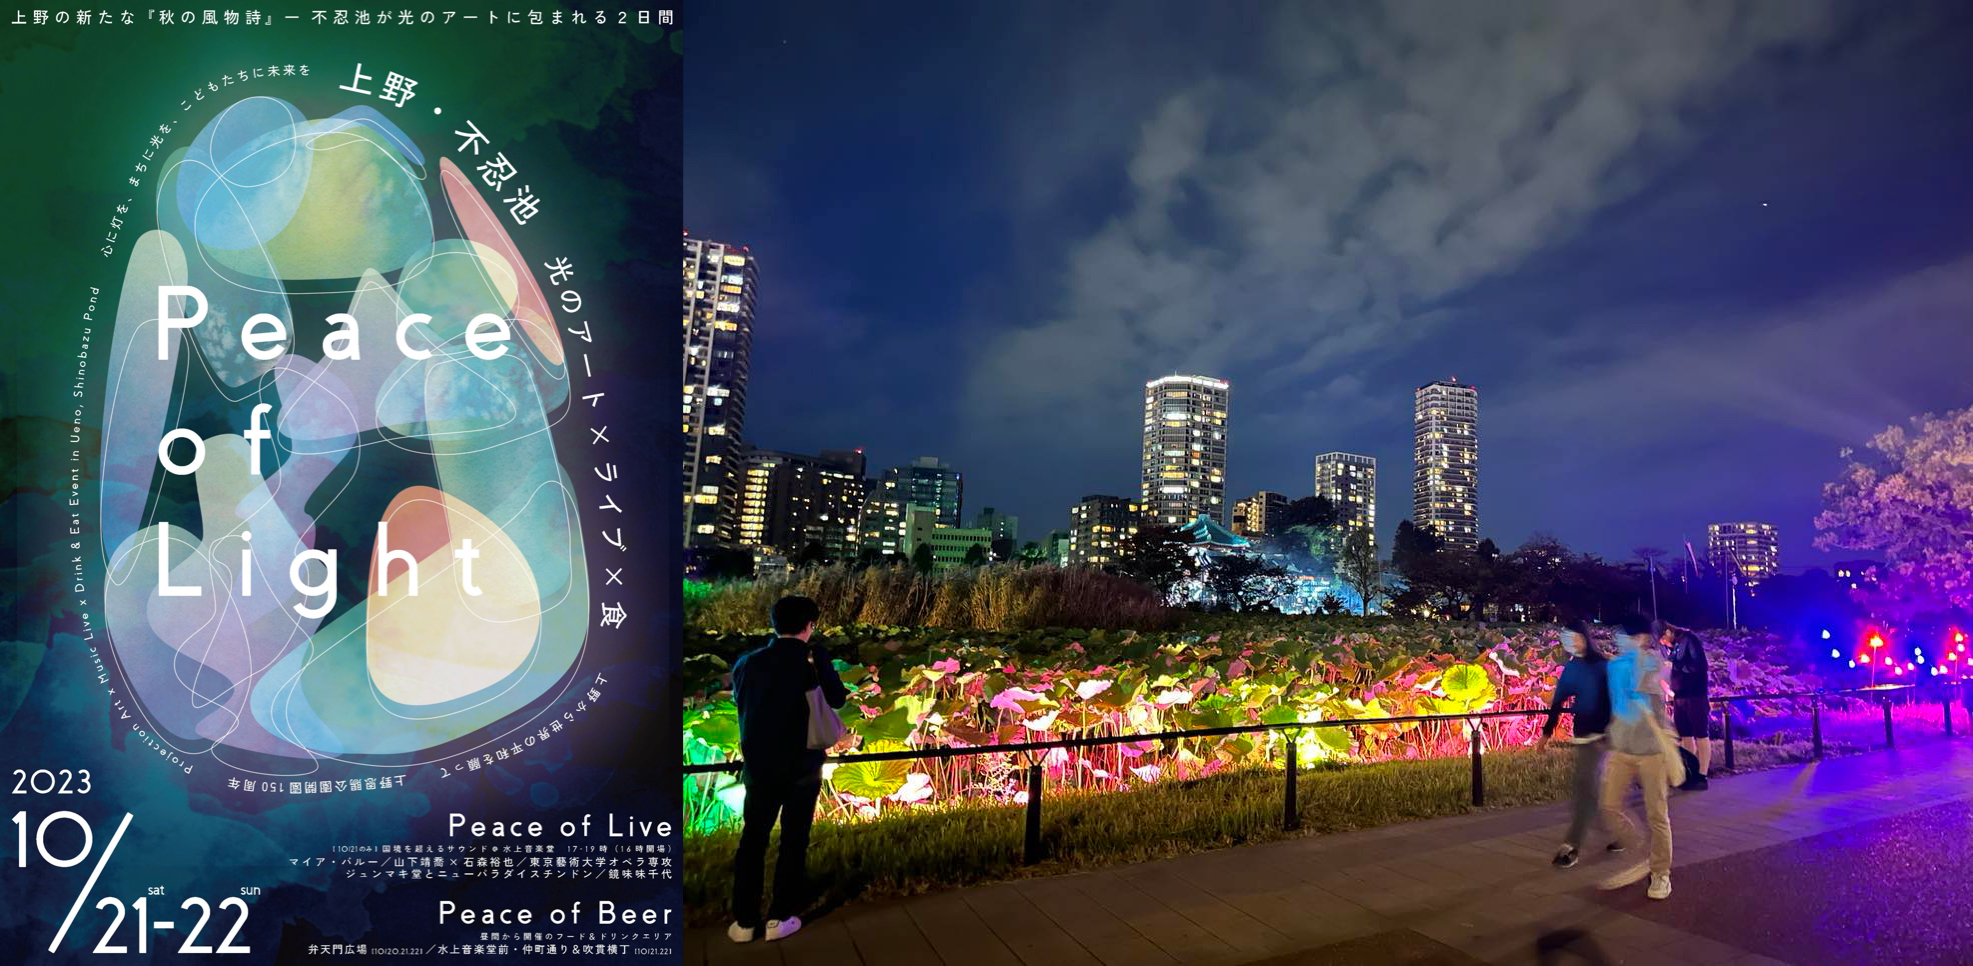 徳川家康公が愛したまち静岡を盛り上げる 徳川家康公をテーマにしたイベントのご紹介